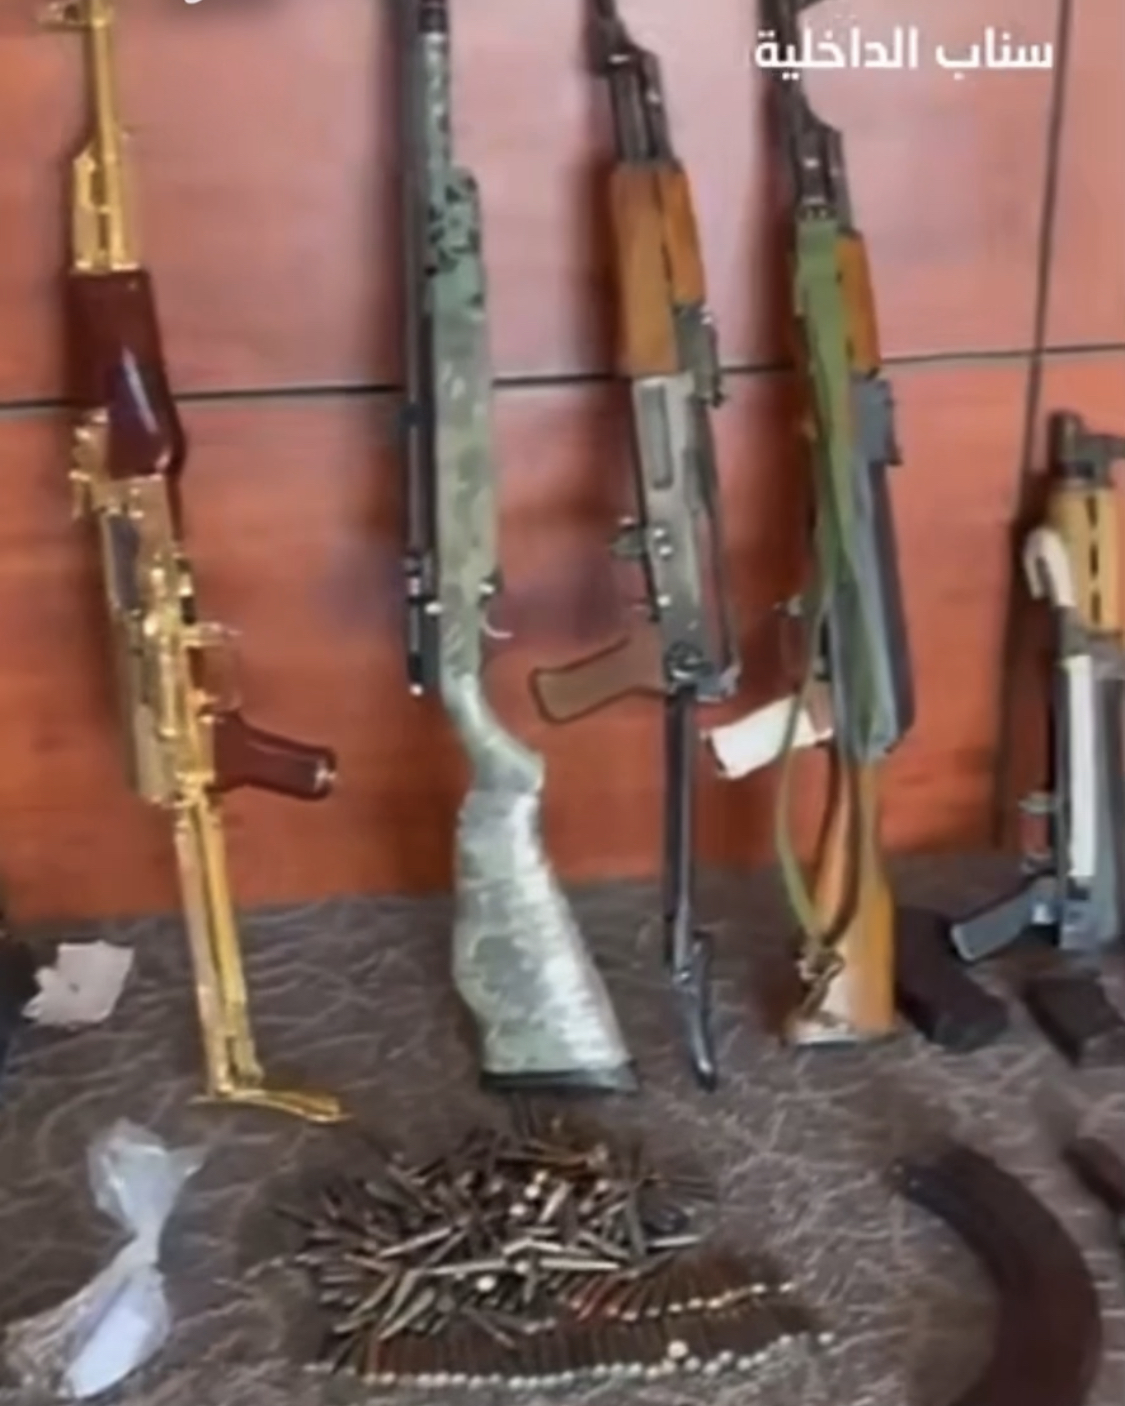 ضبط مواطنين بحوزتهما 27 سلاحًا ناريًّا ومخدرات وأموال مزيفة في الرياض